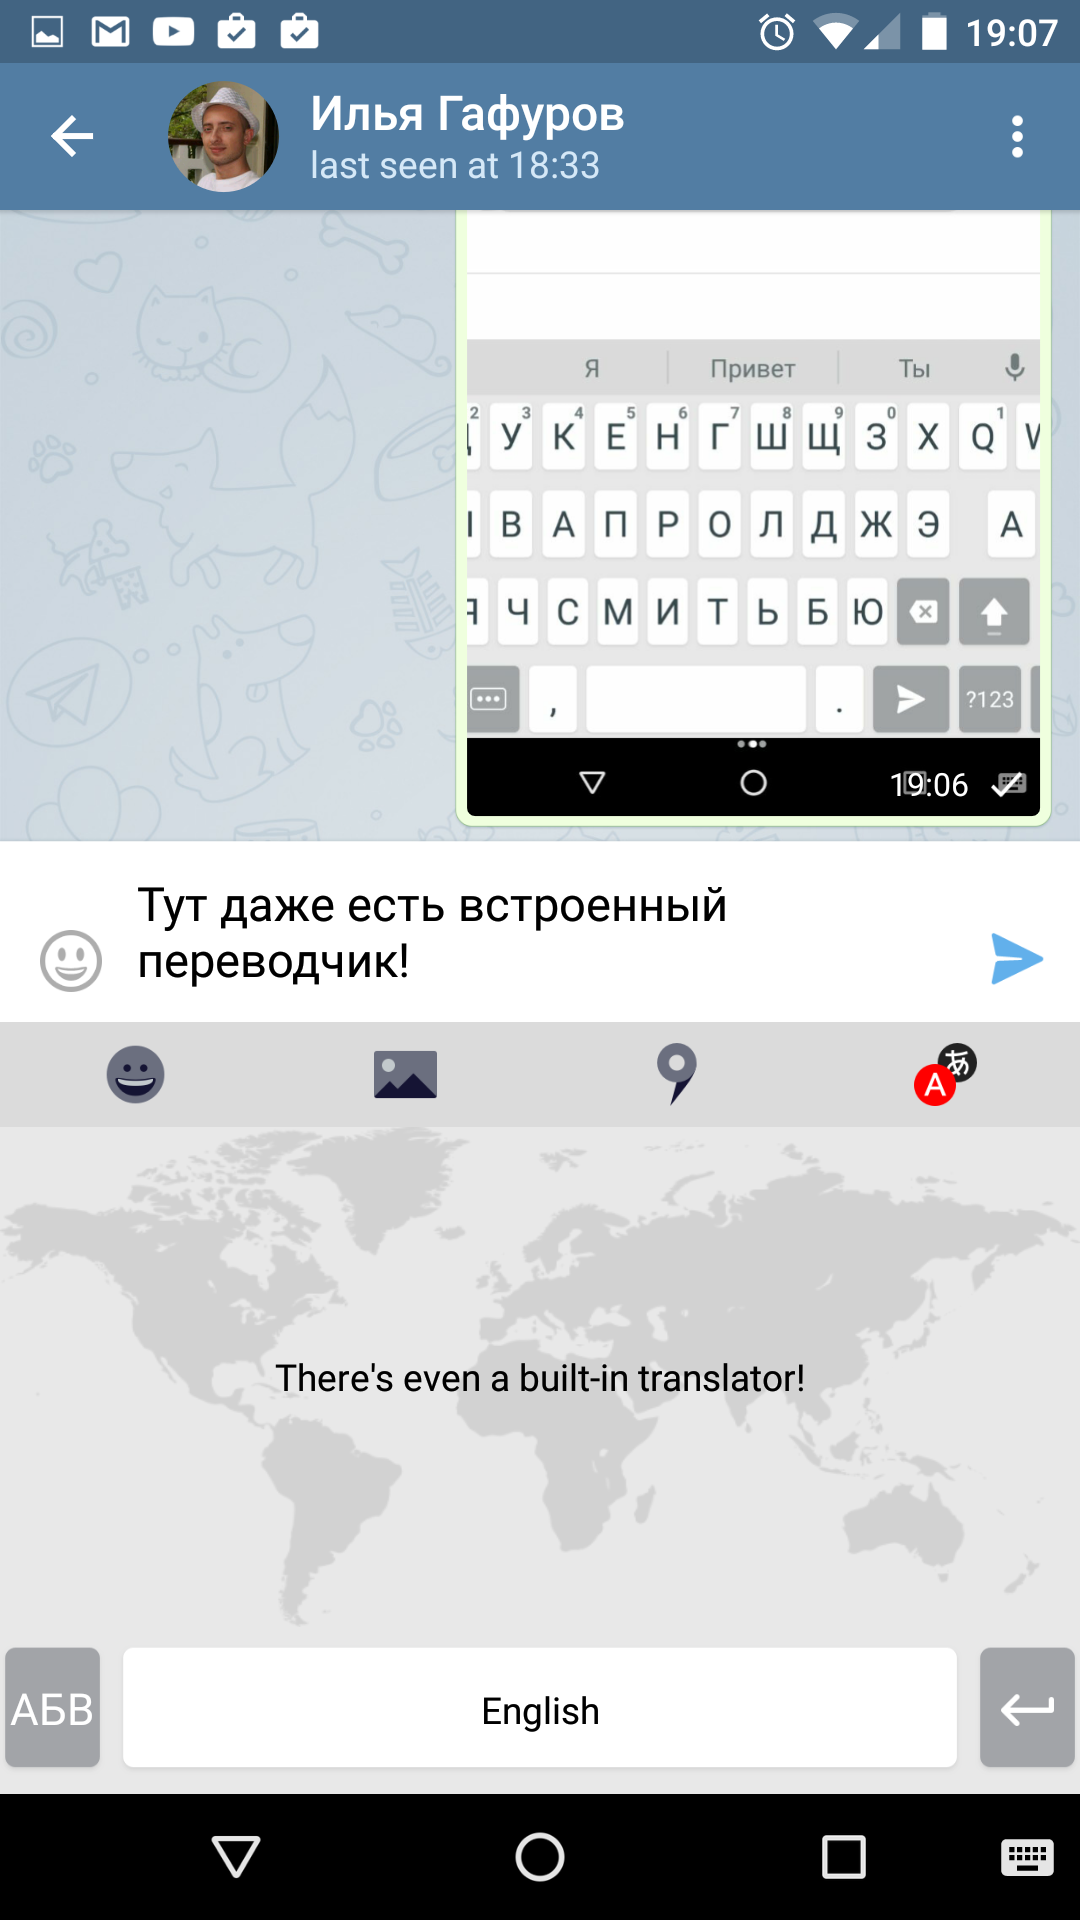 Клавиатура Яндекс для андроид